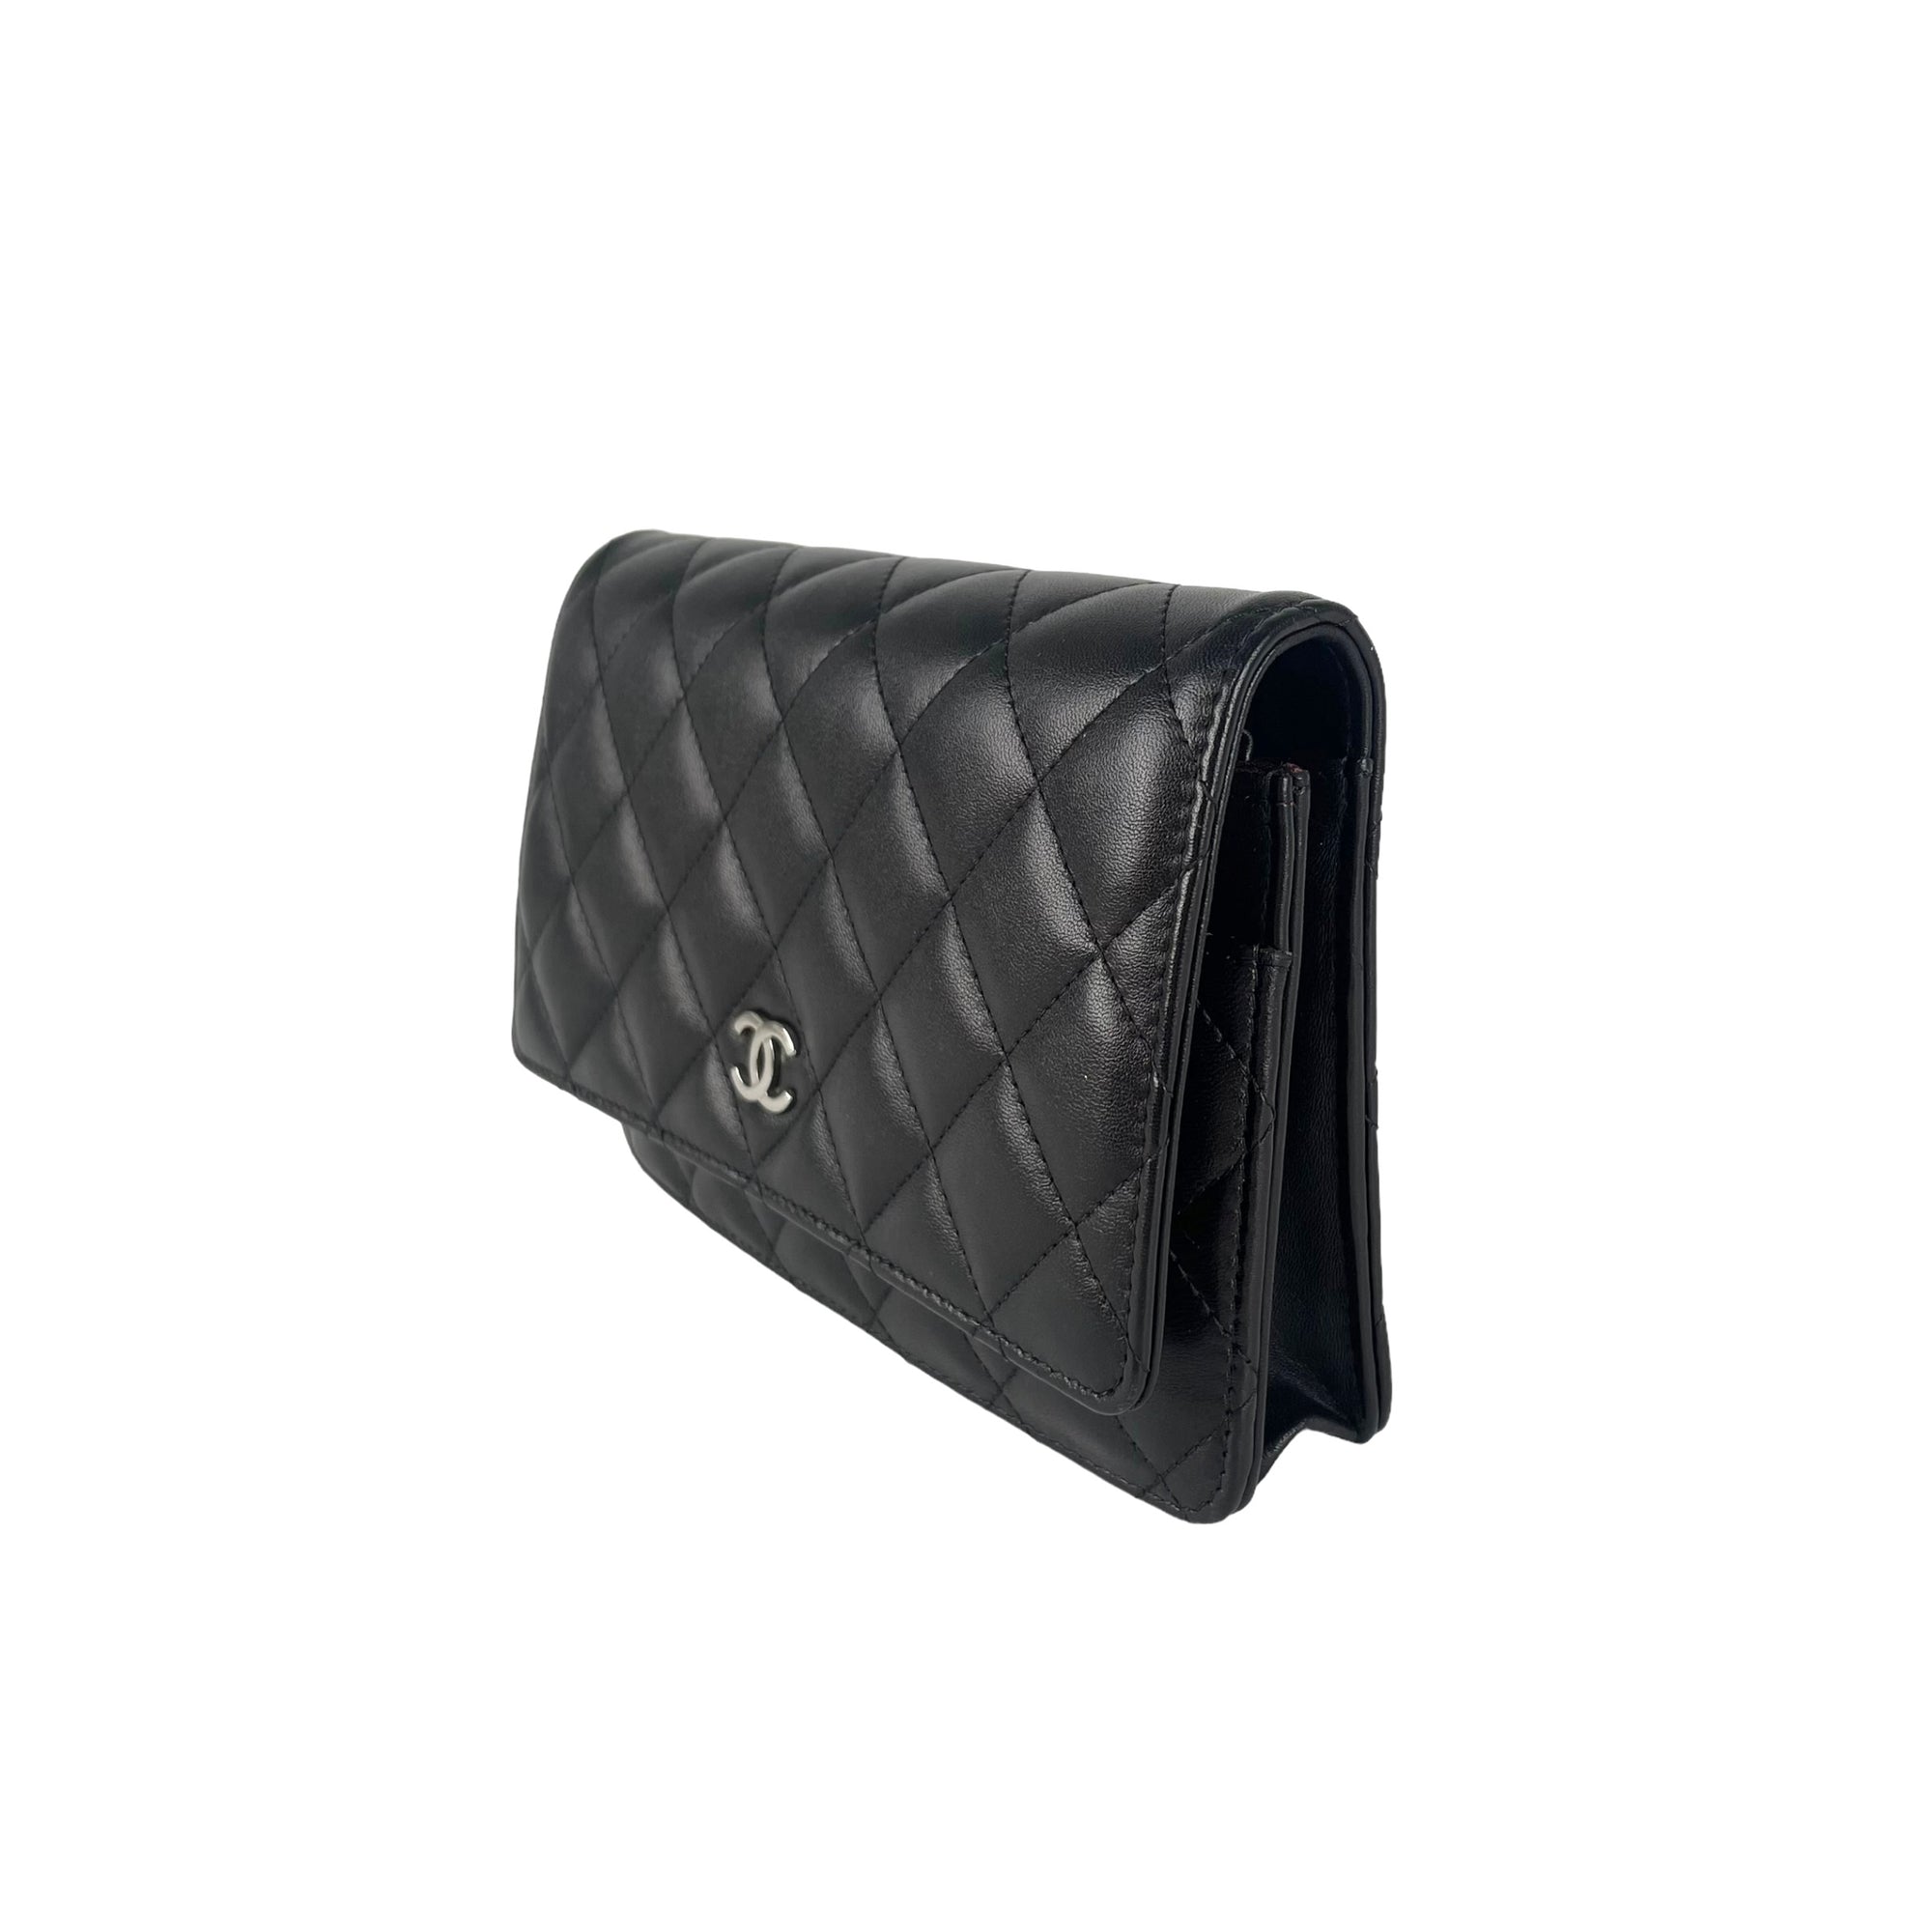 23 Chanel long flap wallet black caviar ghw full set w receipt  Luxury  Bags  Wallets on Carousell